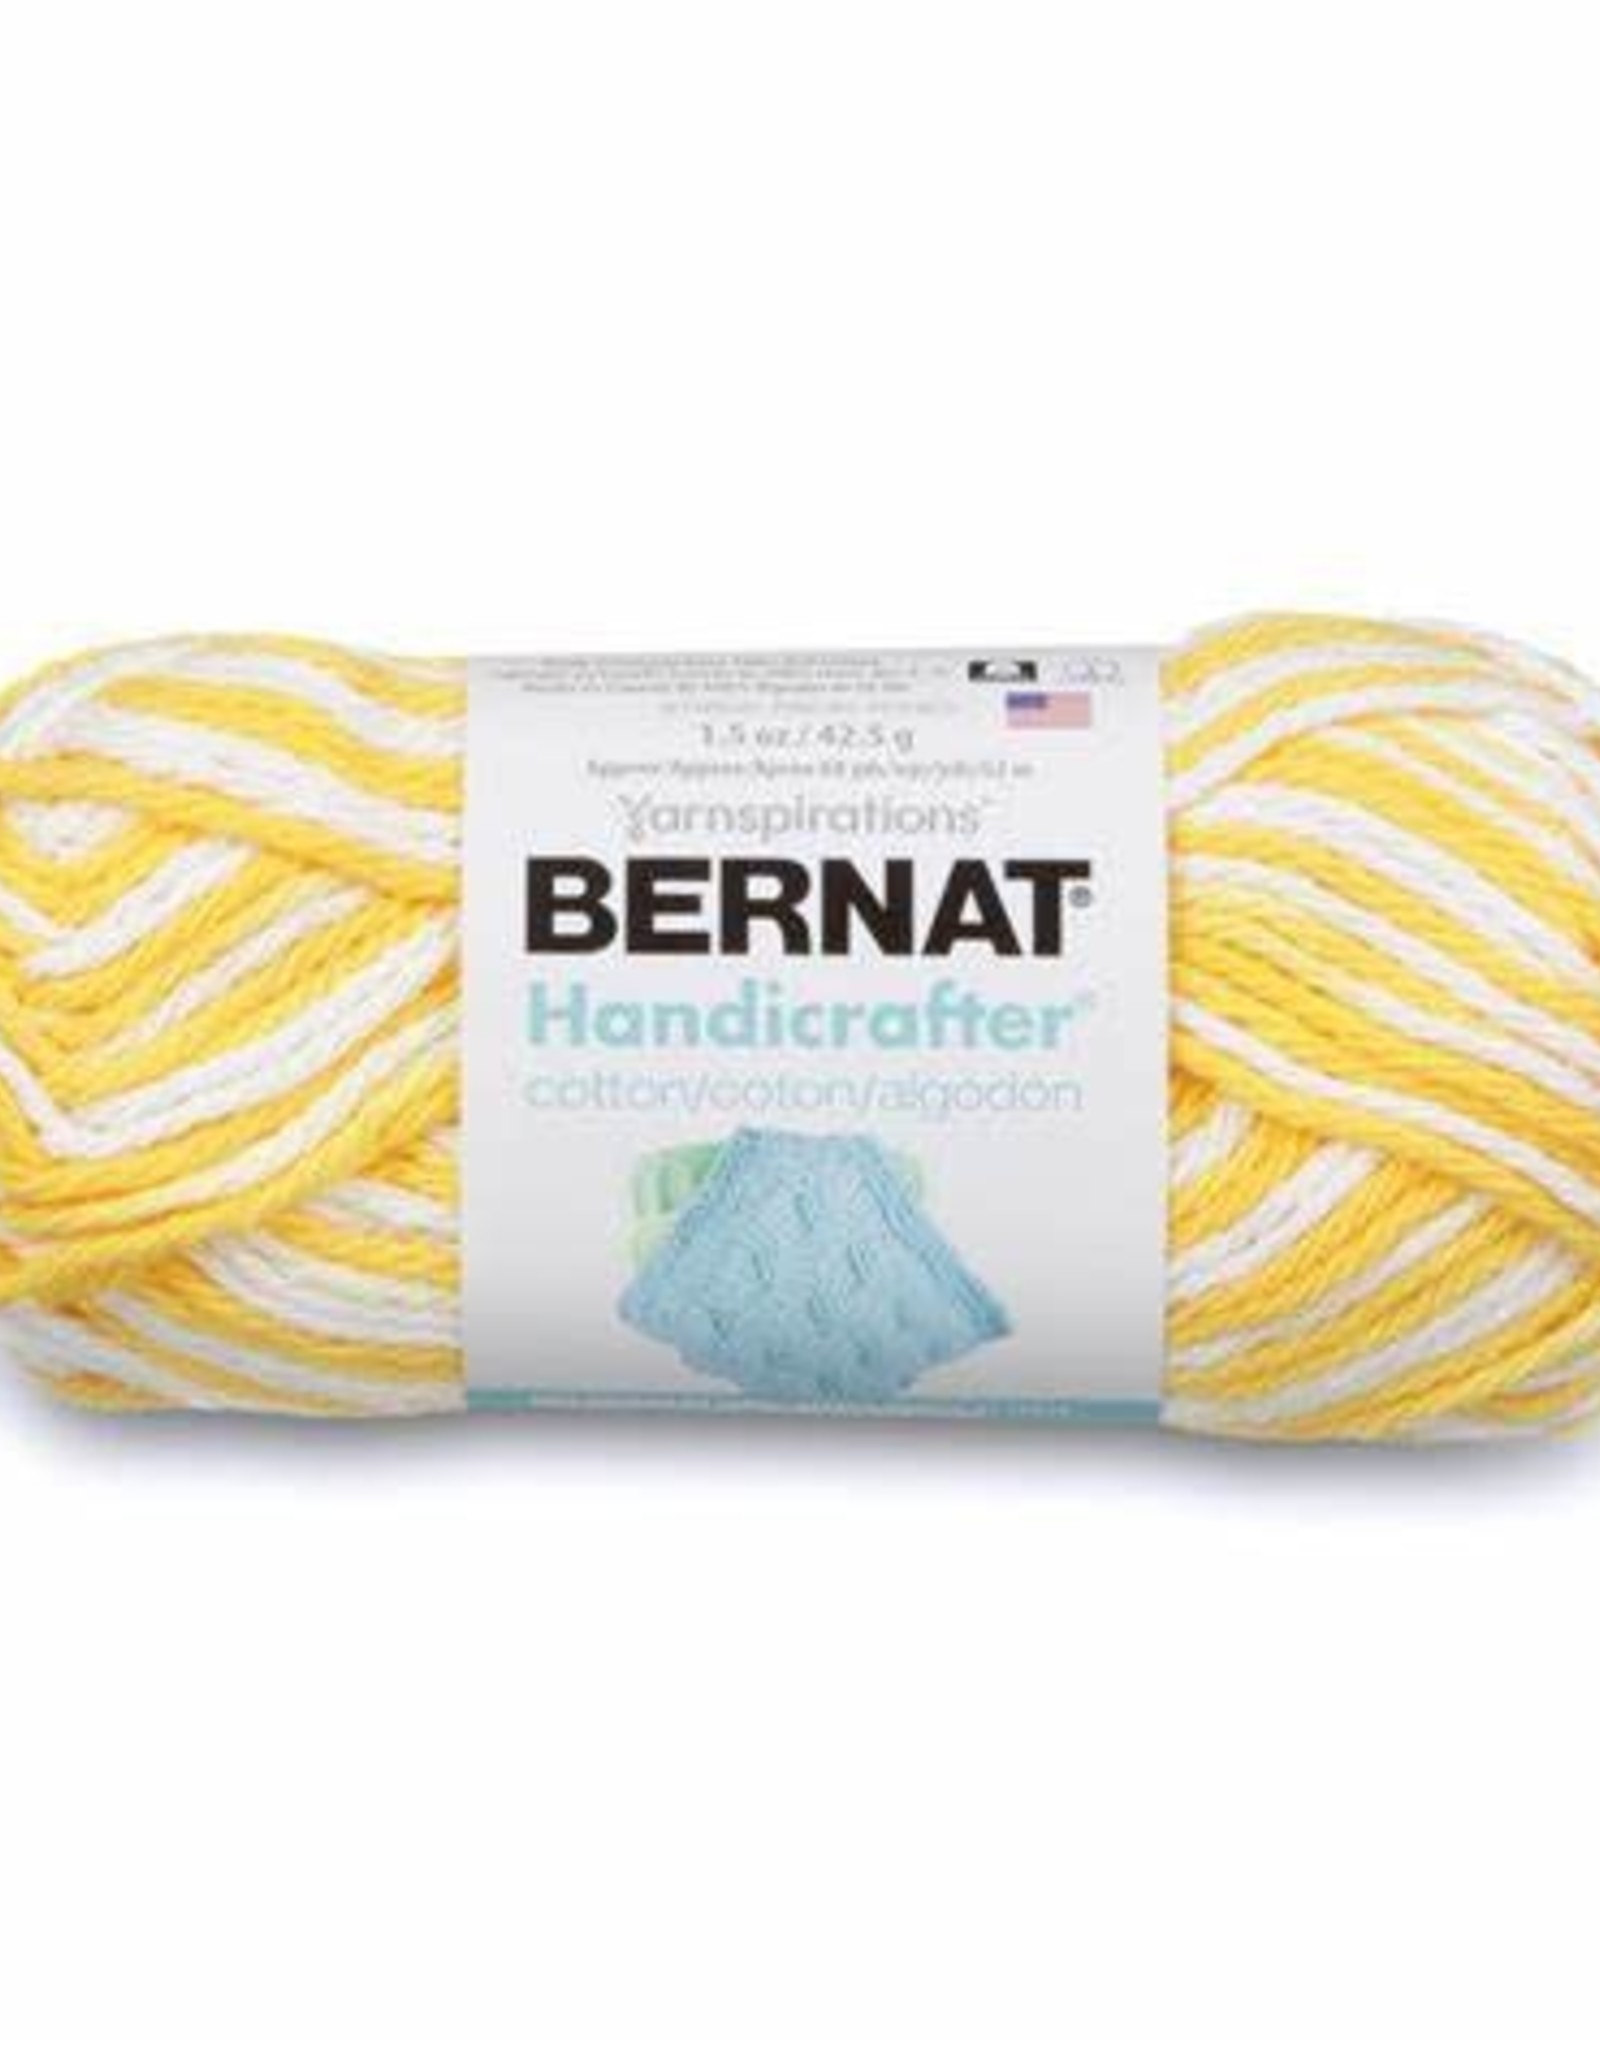 Bernat Bernat Handicrafter Cotton - Lemon Swirl Ombre